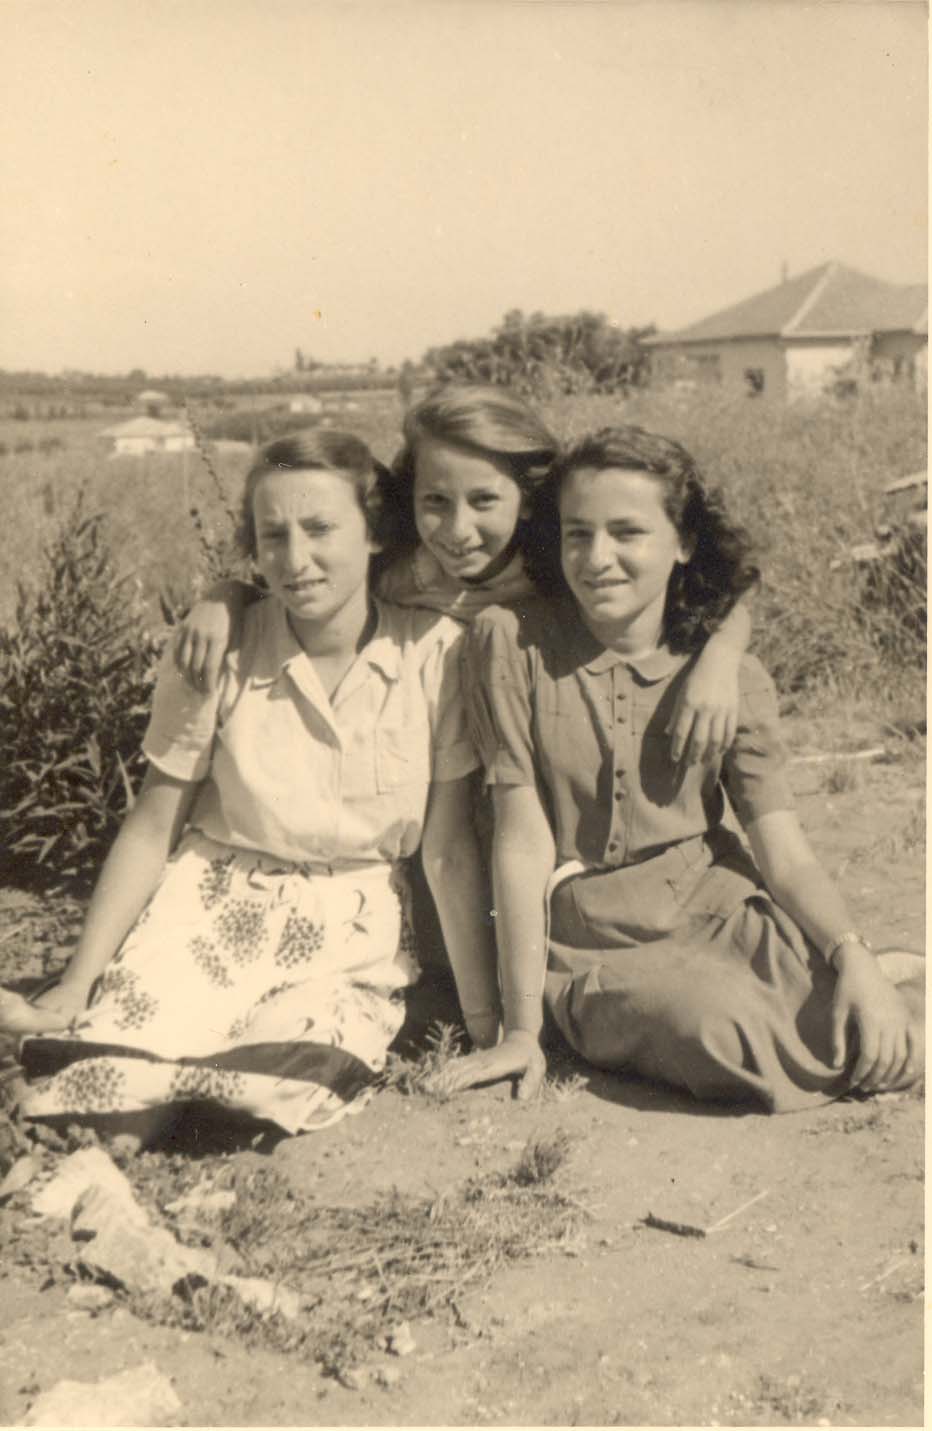 "בימים ההם" 1950, שלוש האחיות לבית סולוביצ'יק, משמאל לימין: שולמית, נאוה ואורה, צולמו ברחוב גורדון ברעננה בו גדלו. לכבוד יום הולדתה העשירי של נאוה הוזמן צלם המושבה, שרגא זולר.